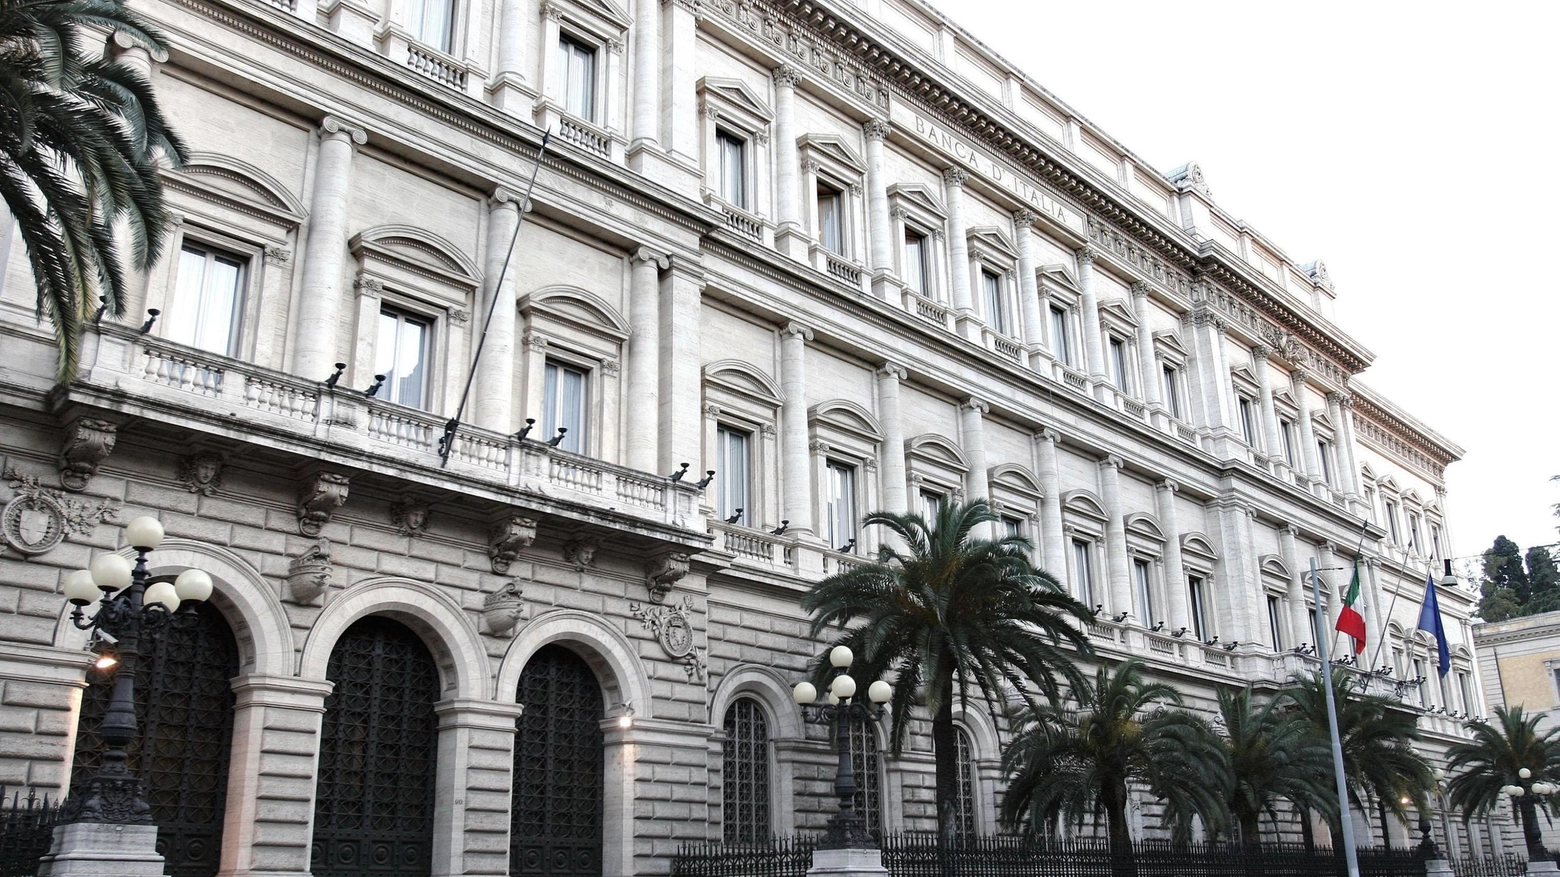 Le proposte di Banca d'Italia per le agevolazioni da mettere in campo per efficientare le case secondo i requisiti Ue: mutui green o trasferimenti monetari diretti. “Le agevolazioni dovrebbero essere certe e con un adeguato livello di stabilità”